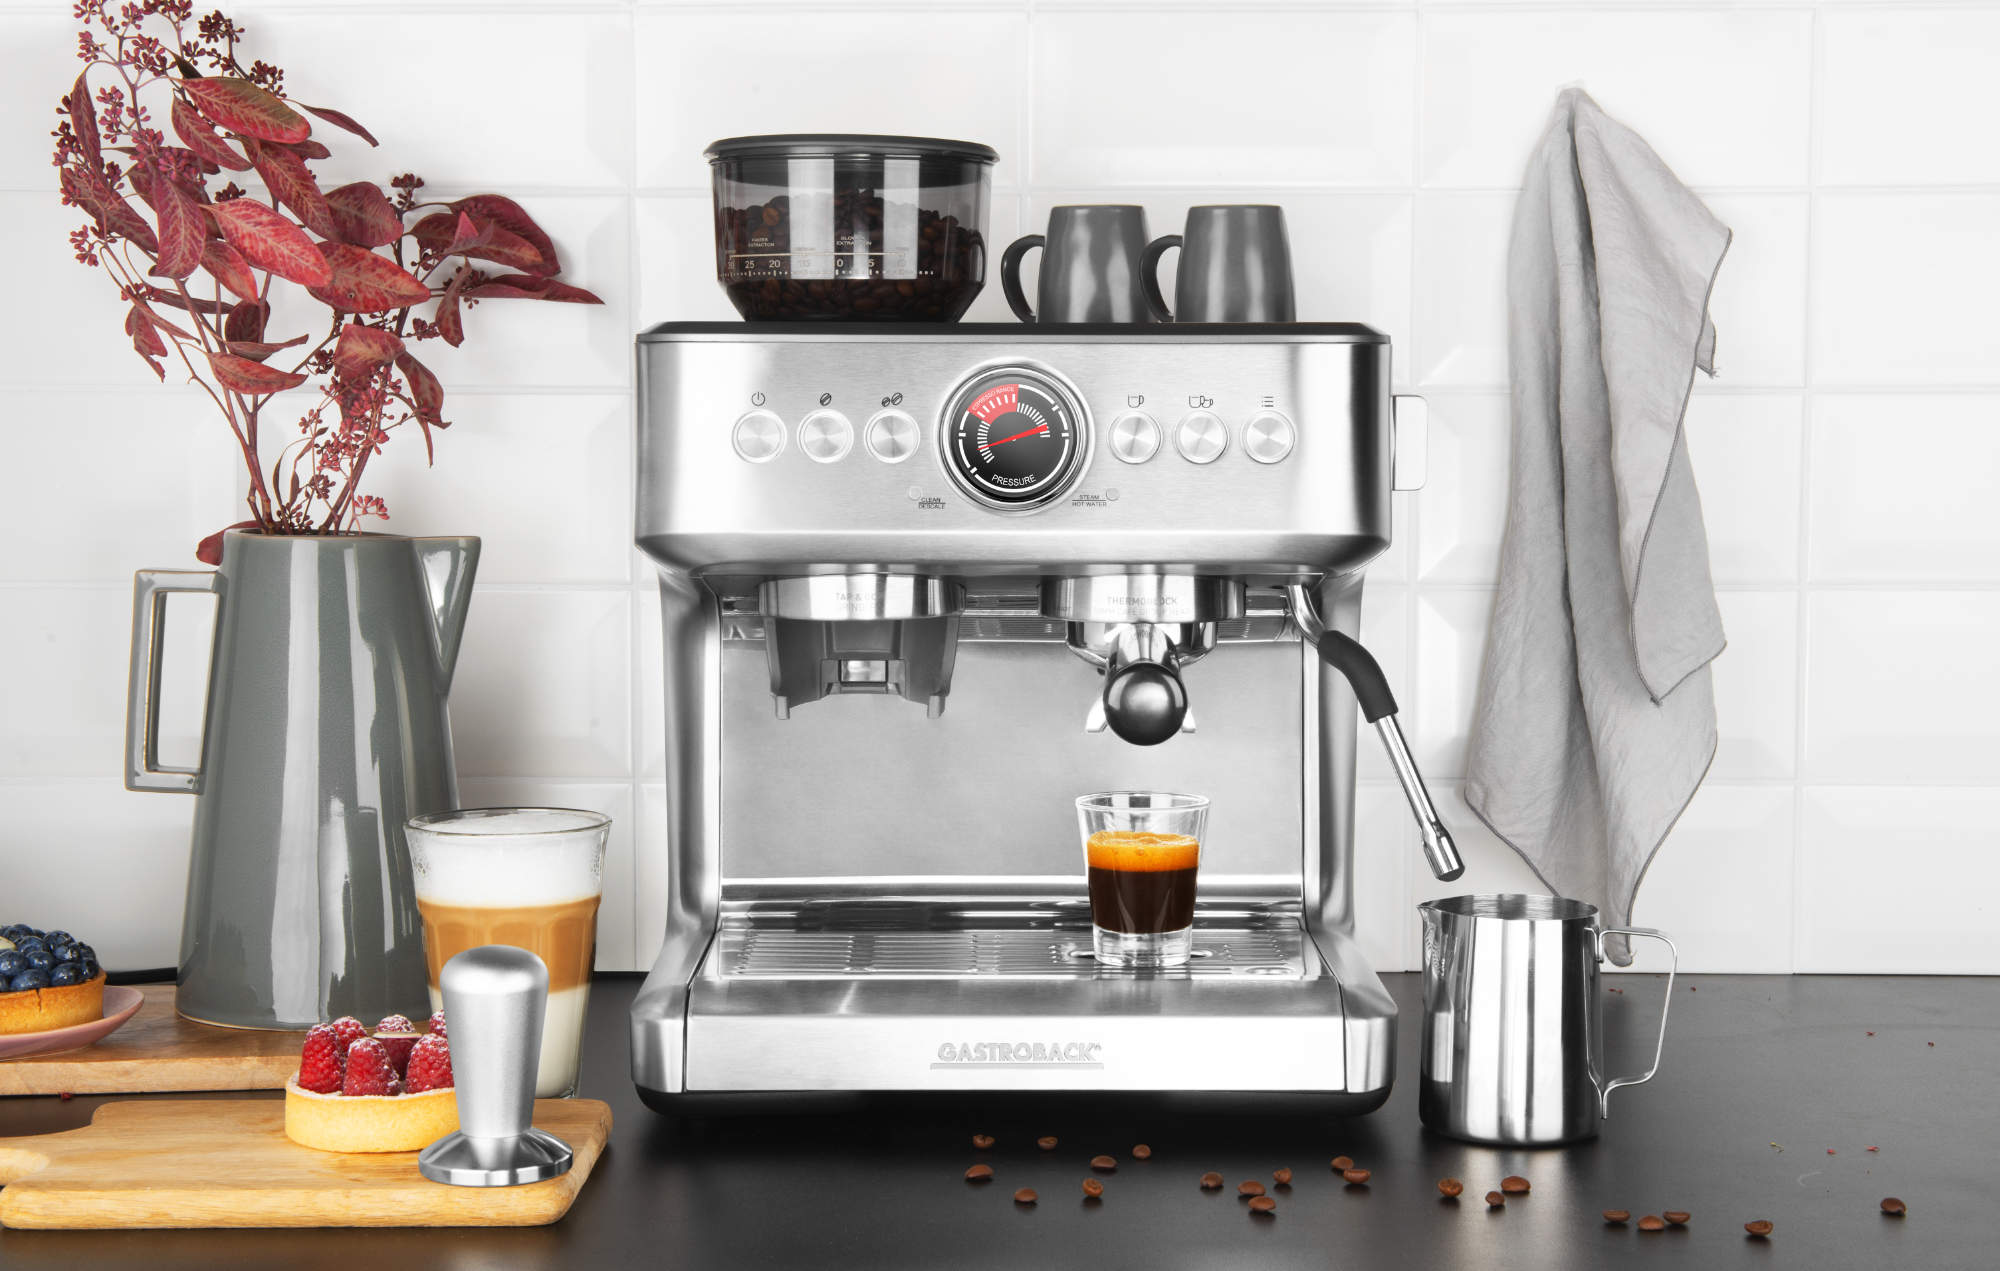 GASTROBACK Design Espresso Advanced Duo